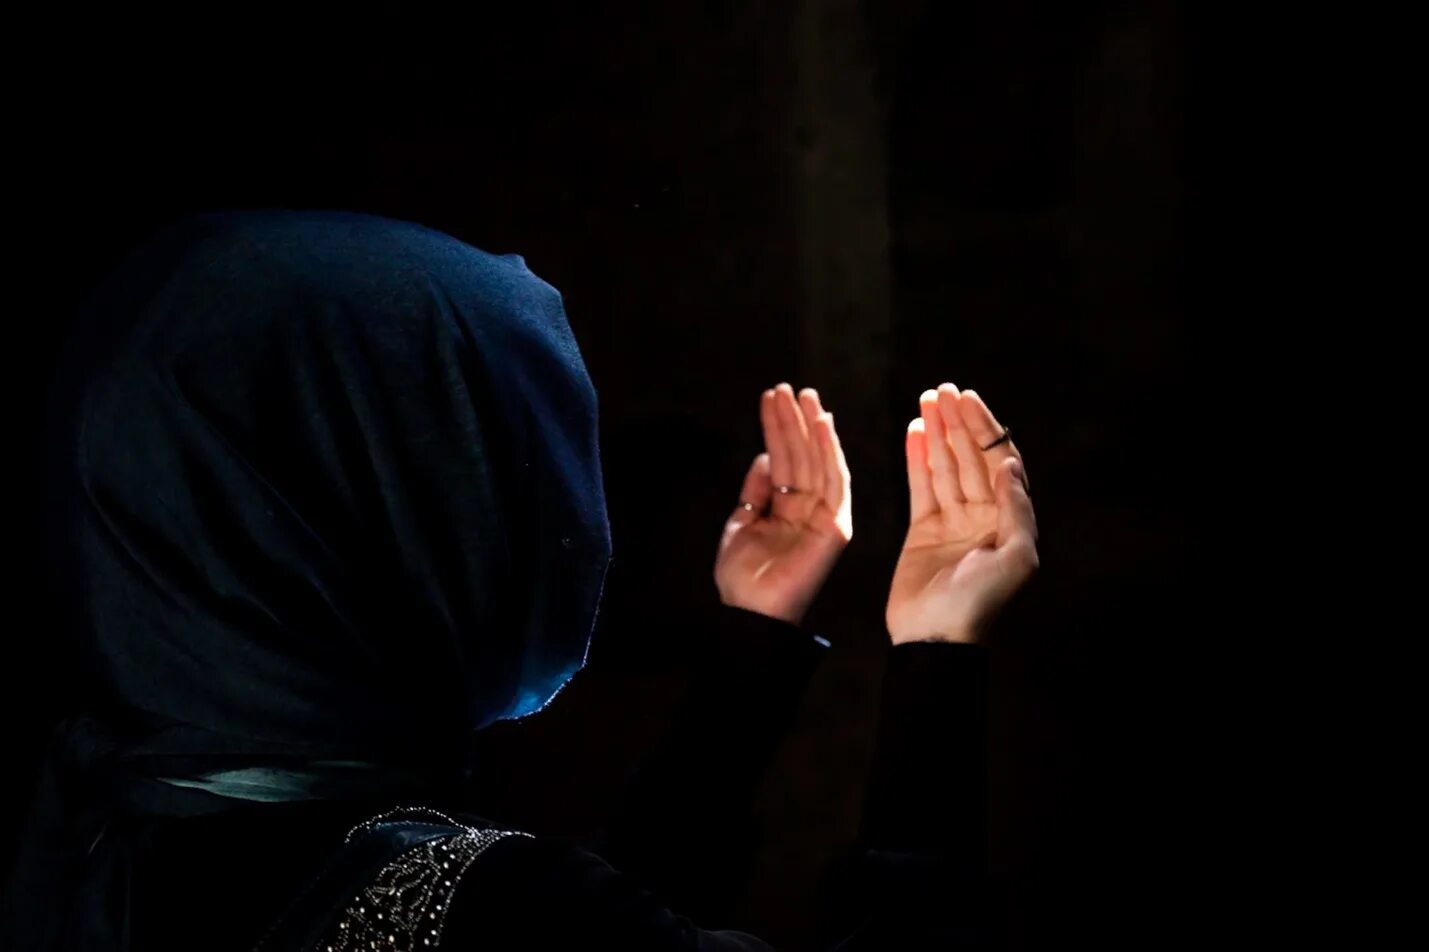 Руки во время молитвы. Дуа Мольба. Мусульманка молится. Ладони в молитве.